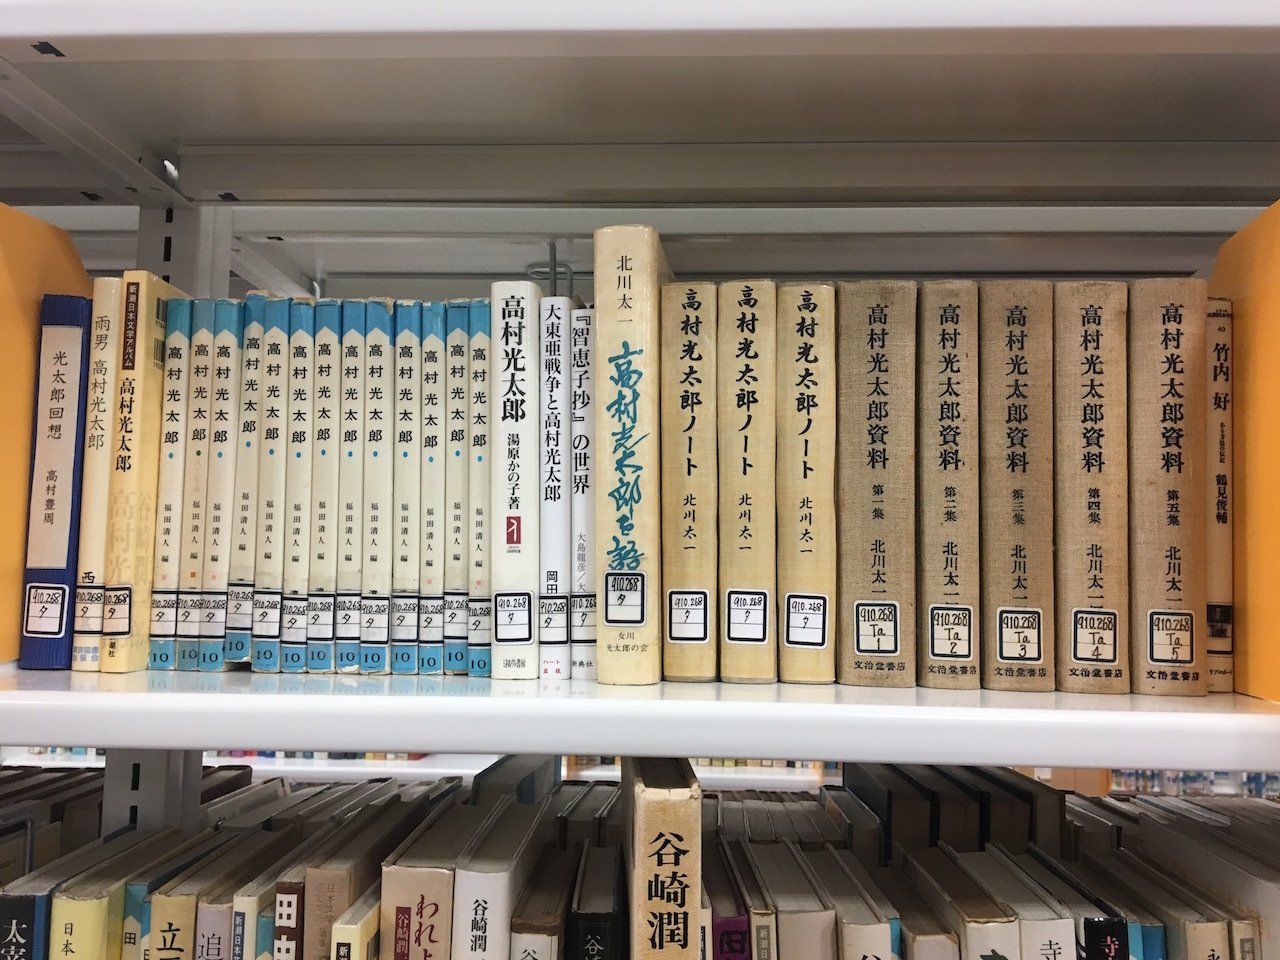 日本女子大学附属中学校　図書館司書インタビュー「生徒それぞれが意味を持って図書室に価値を見出してくれるように整えていければなと思っています」17